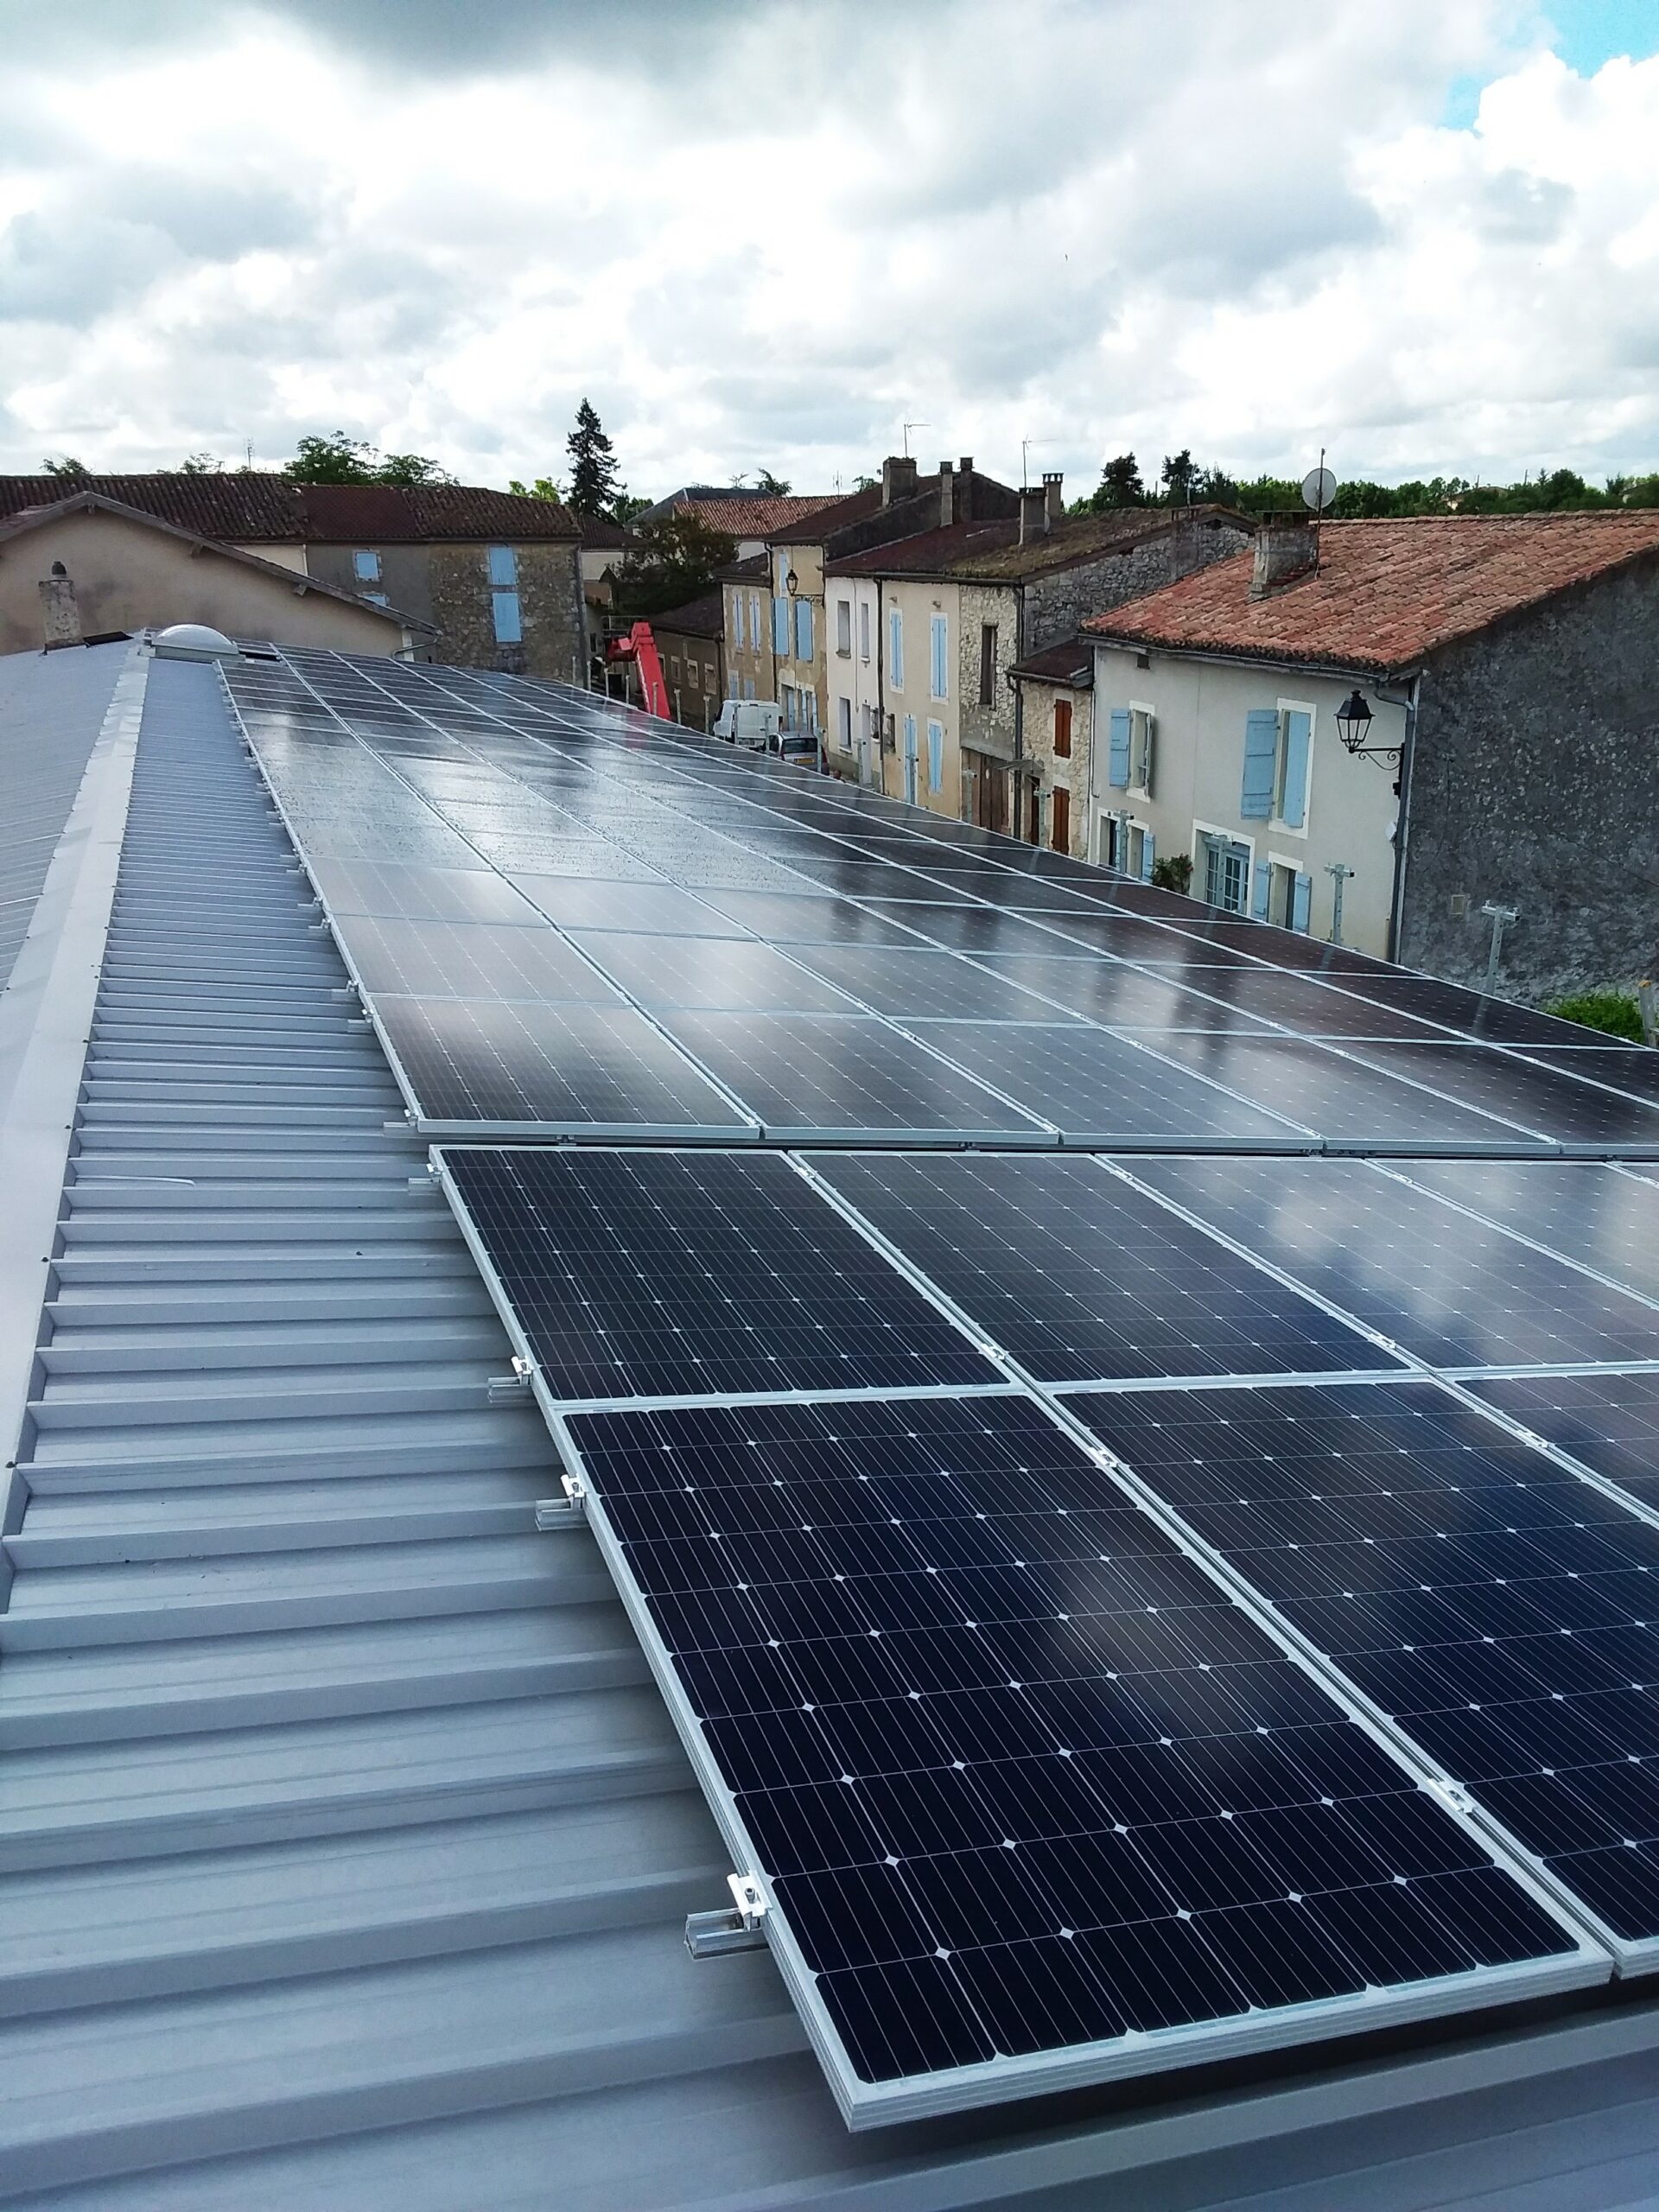 Pose panneaux solaire Gers, projet photovoltaïque bâtiment communal Saint-Clar (32) - Thermonéo Solaire, installateur photovoltaïque RGE, devis photovoltaïque gratuit pour les professionnels et les particuliers, pose de panneaux solaires autoconsommation revente